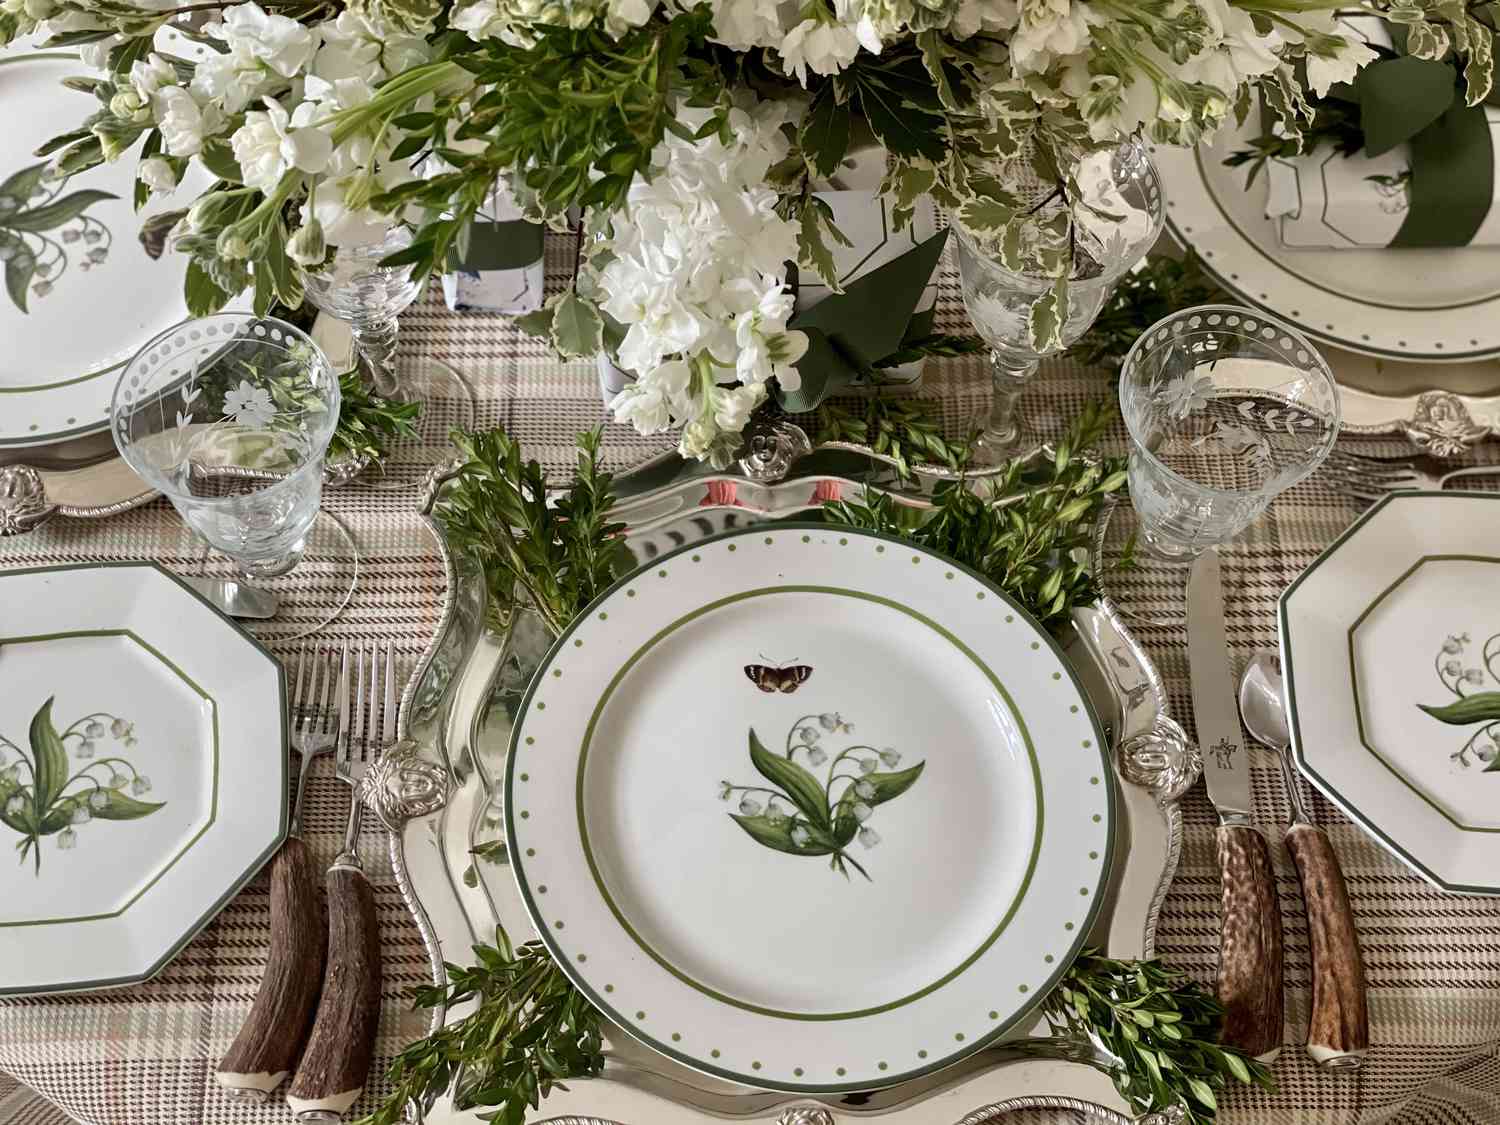 Une nappe à carreaux recouvre une table sur laquelle sont posées de délicates assiettes en céramique couvertes d'images de fleurs à feuilles. Le centre de table est composé de fleurs à feuilles blanches assorties aux assiettes